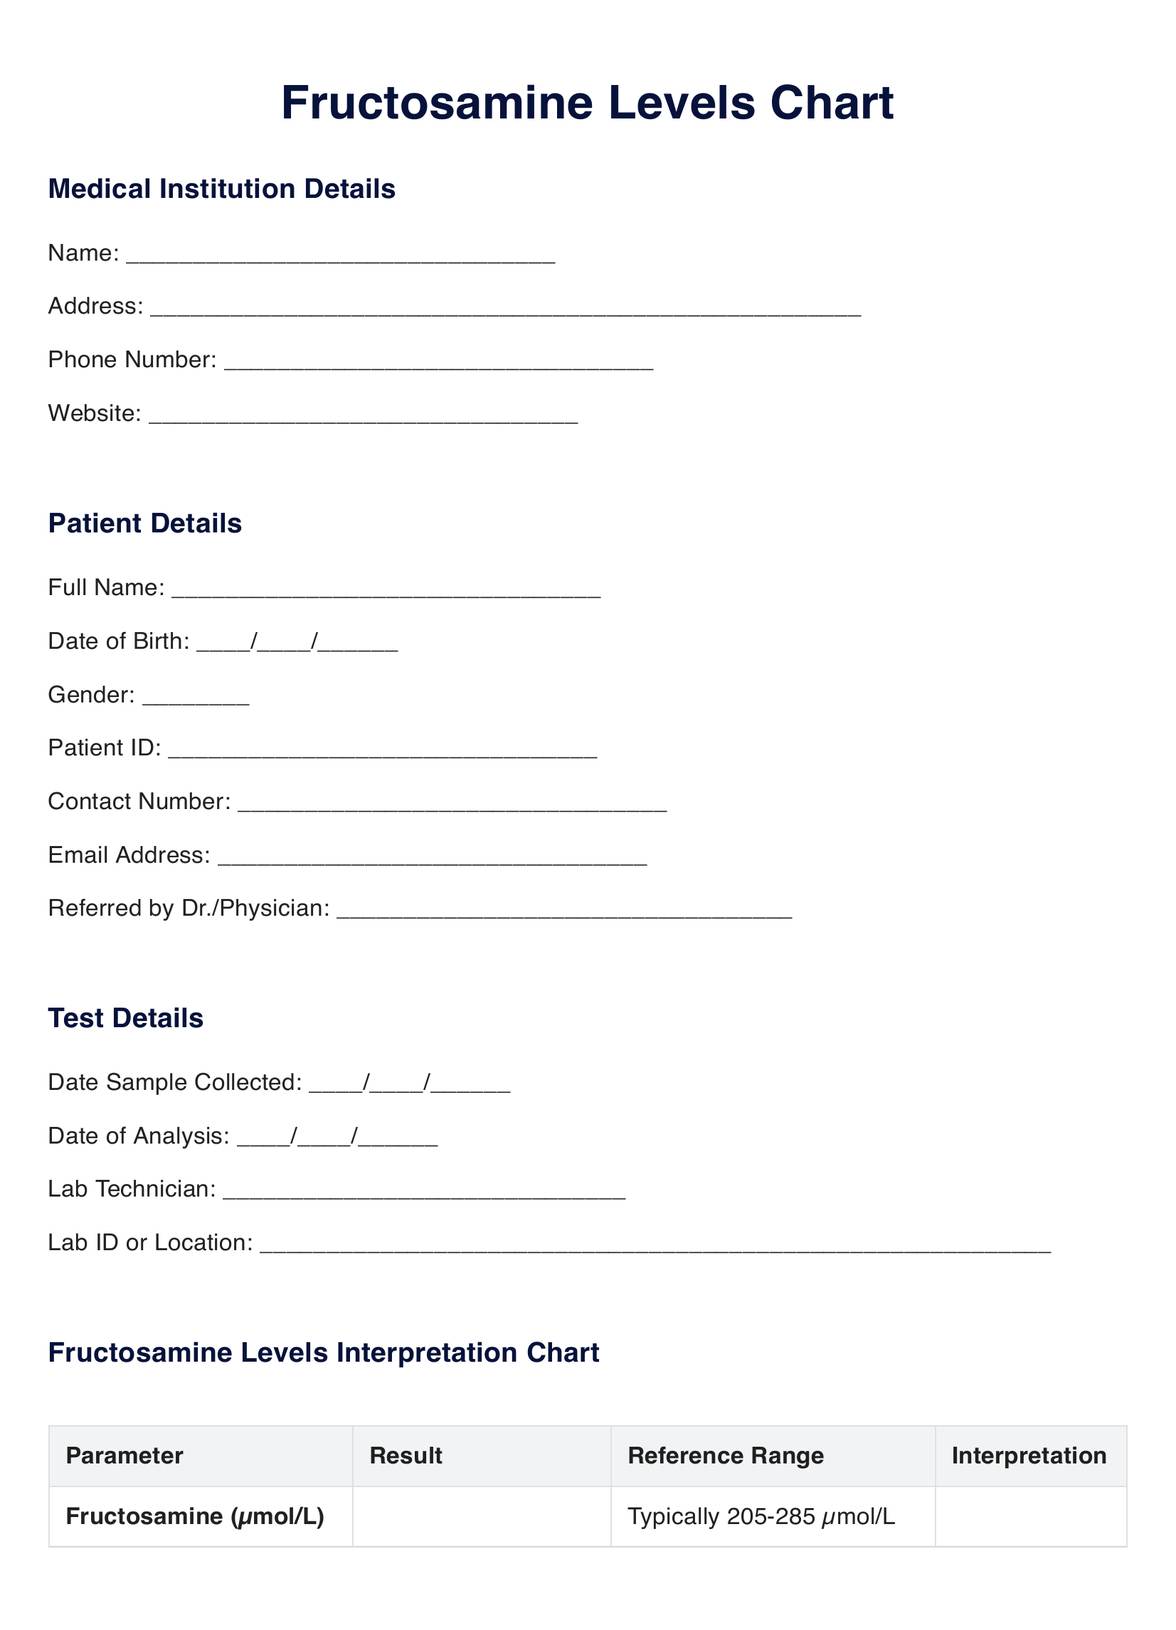 Fructosamine Levels PDF Example